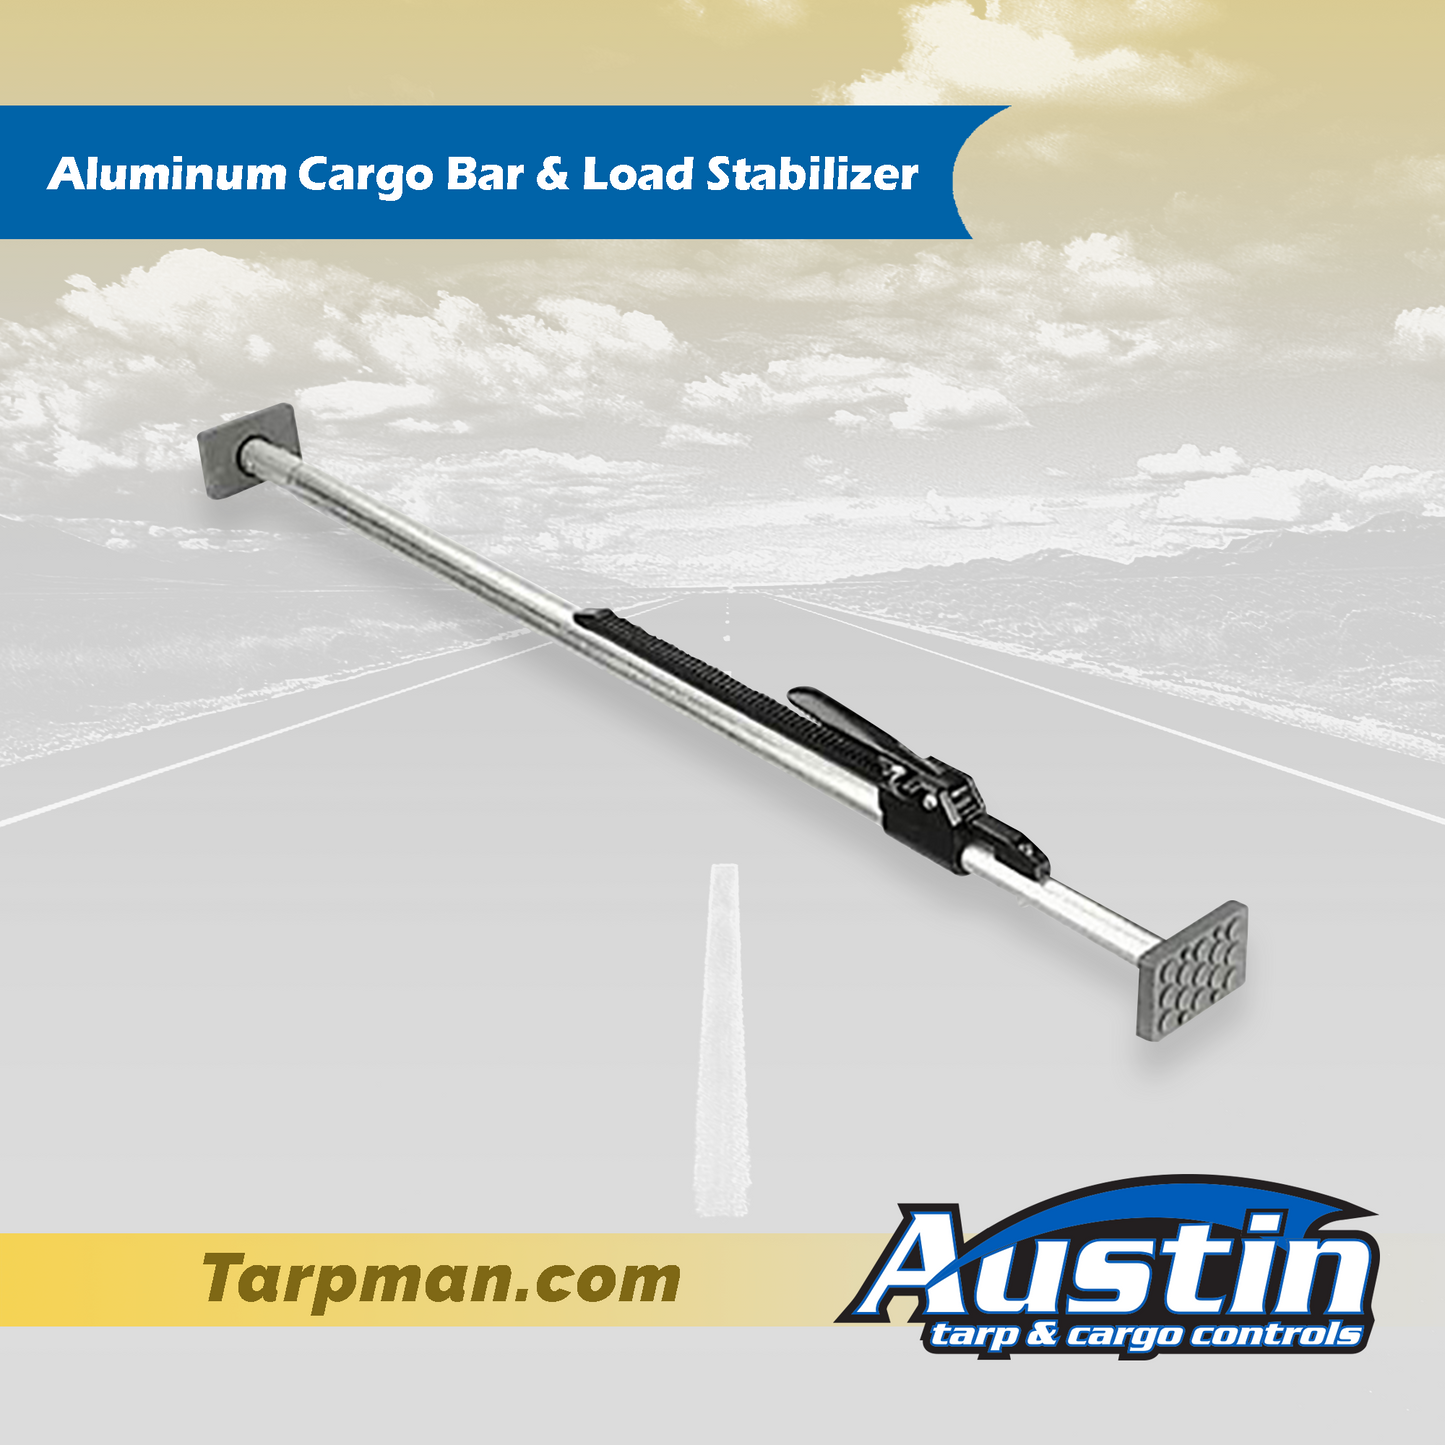 Aluminum Cargo Bar & Load Stabilizer